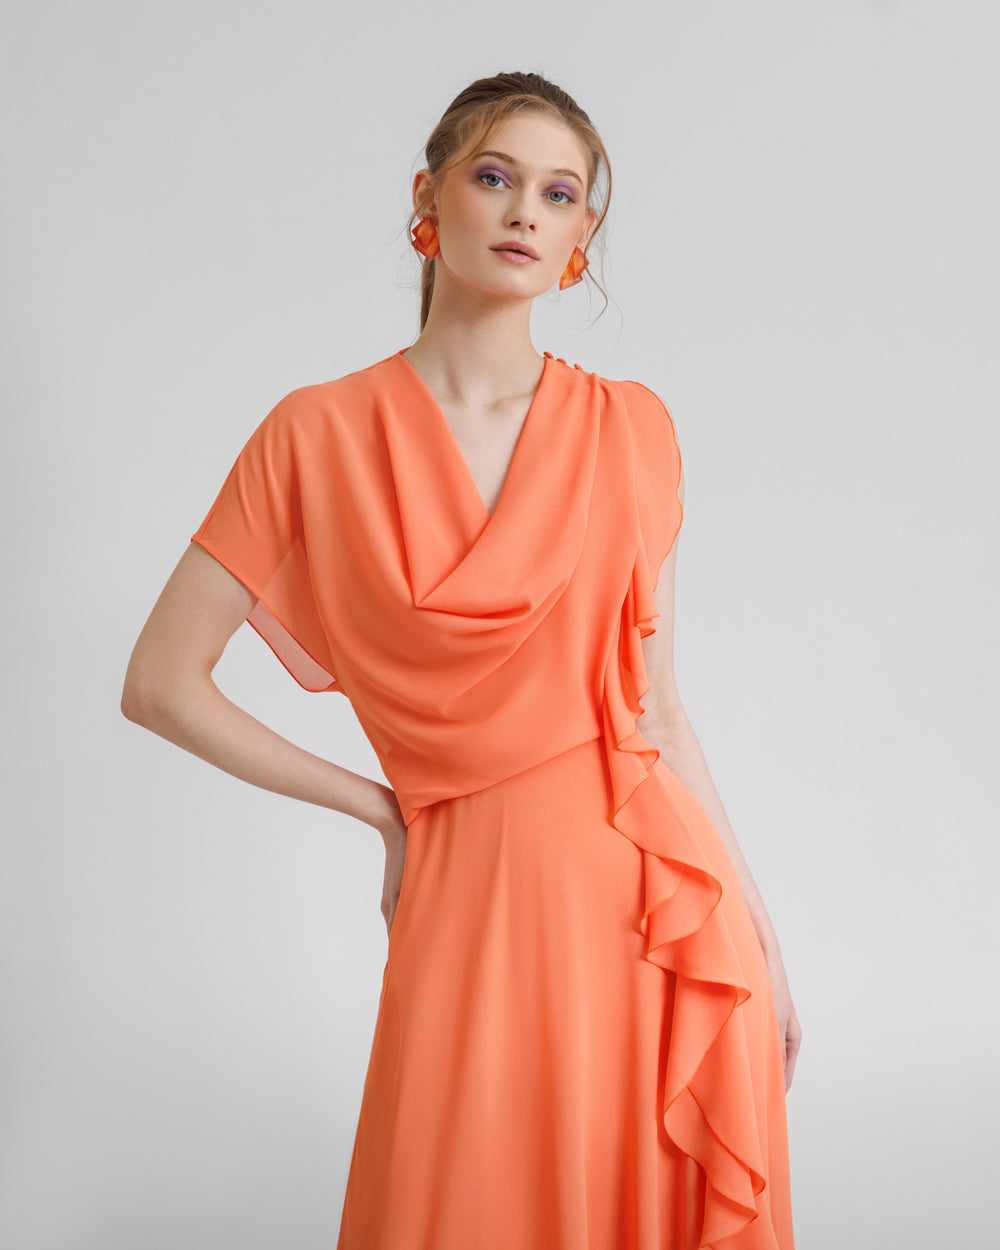 Draped Orange Chiffon Dress